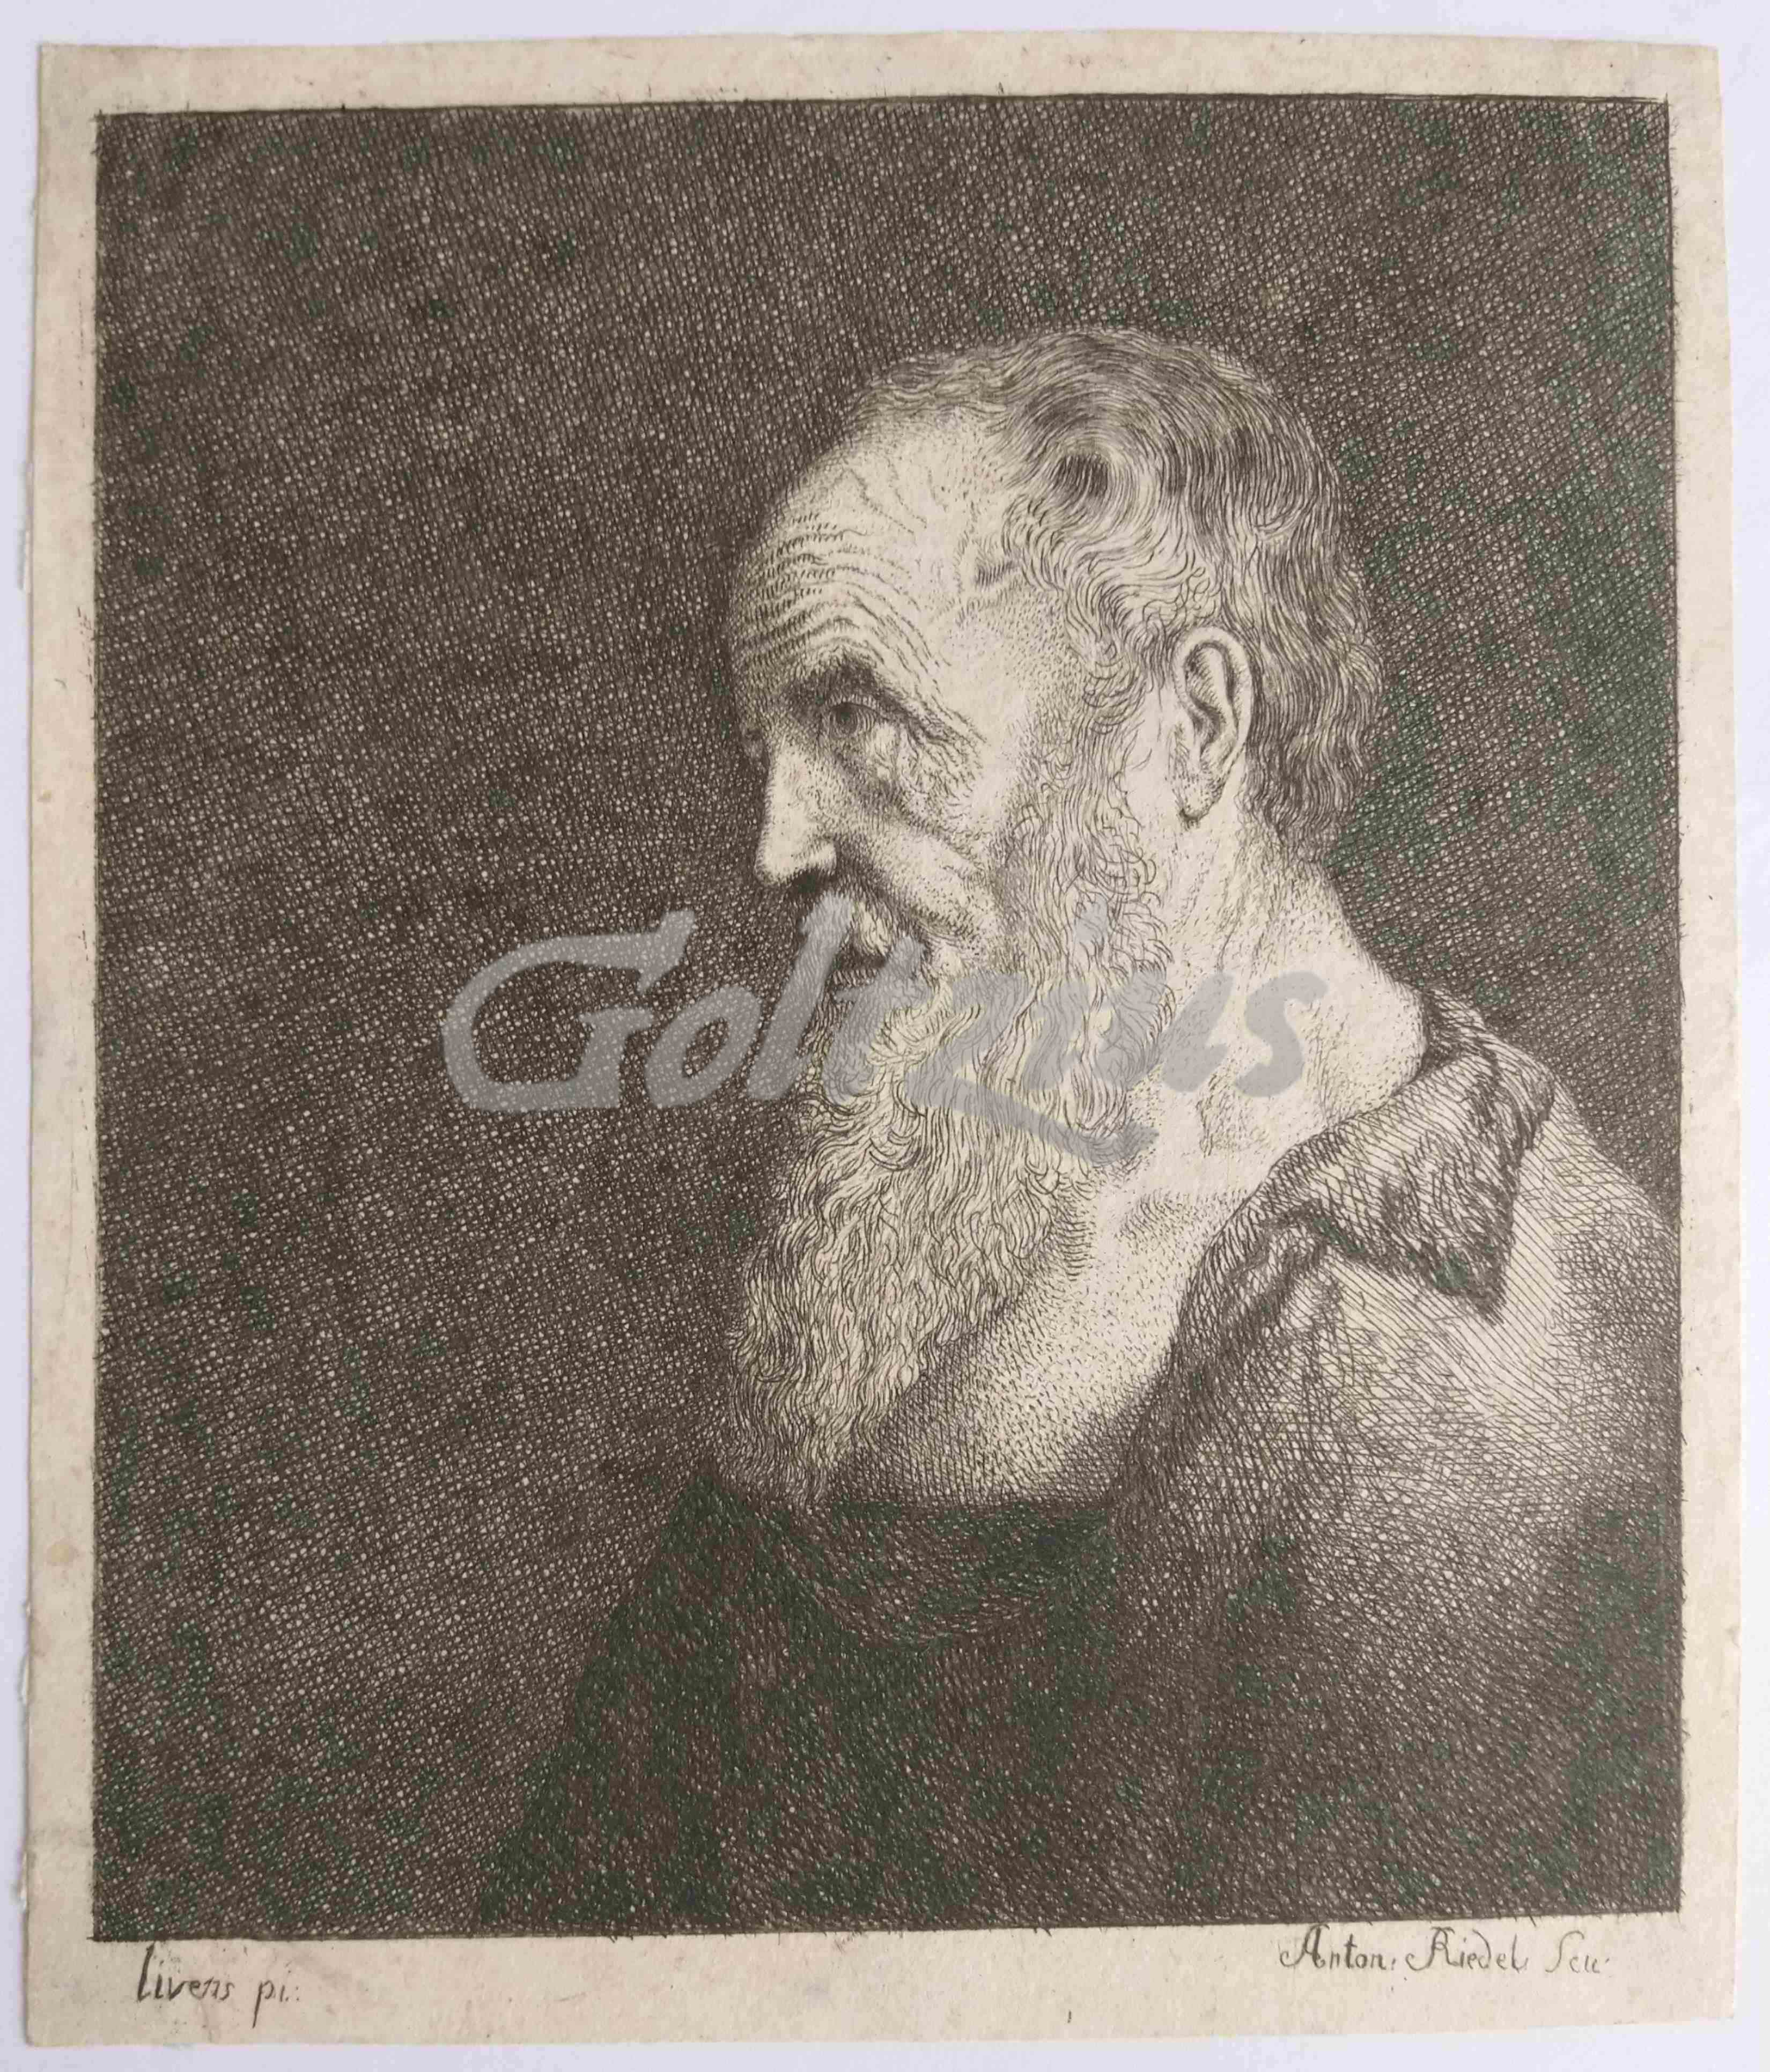 RIEDEL, ANTON HEINRICH, Portrait of an old man